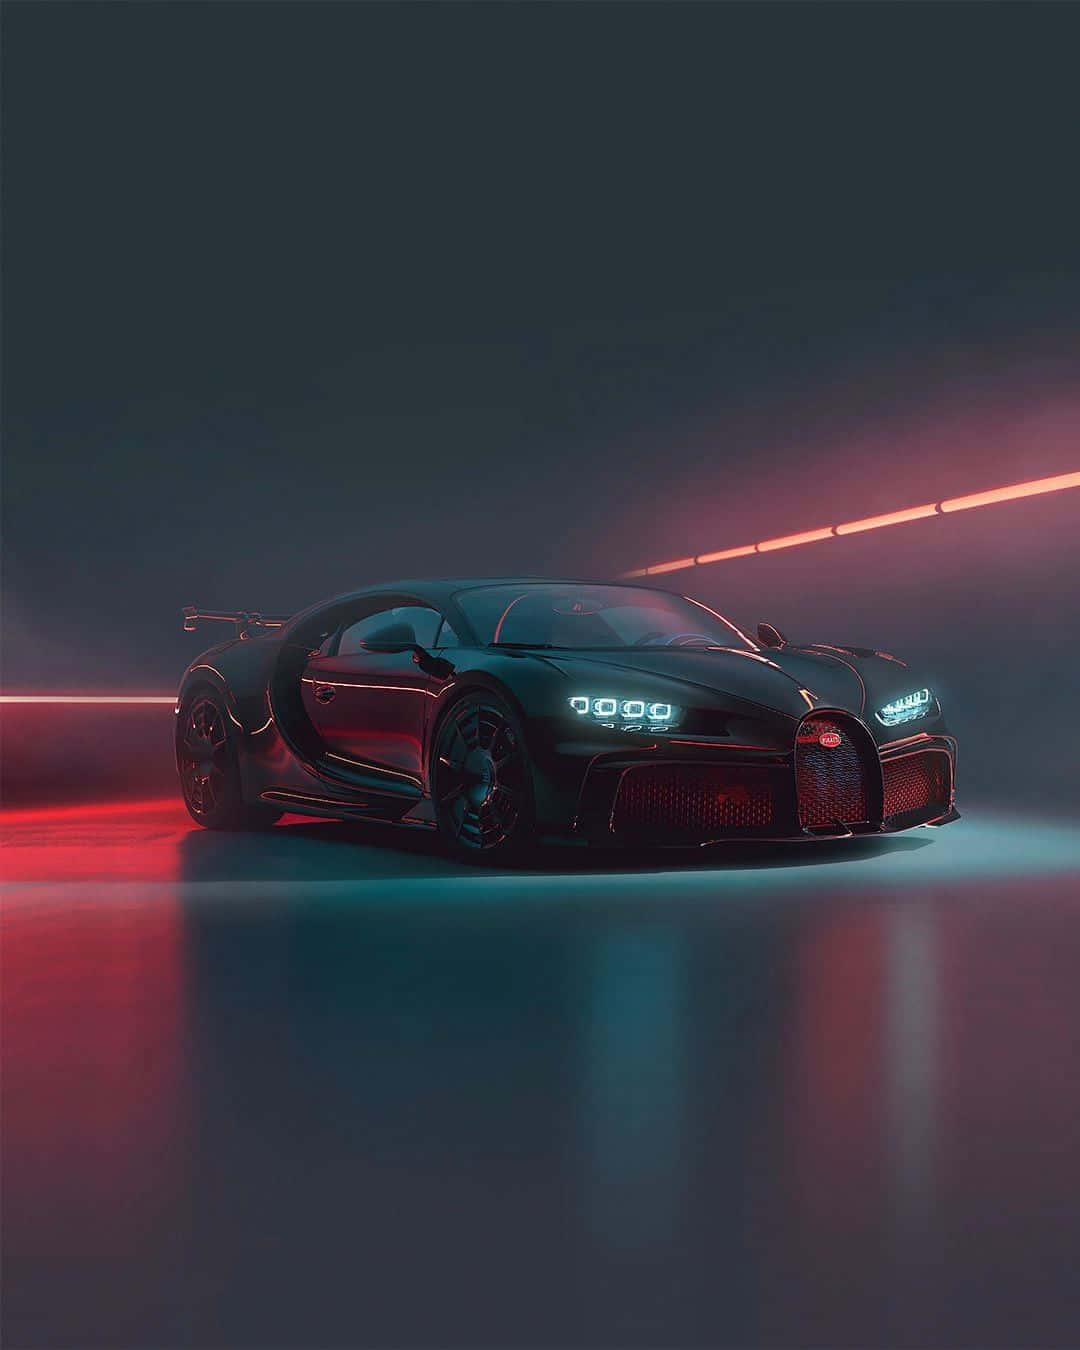 "Neon Bugatti - a dream car come to life" Wallpaper